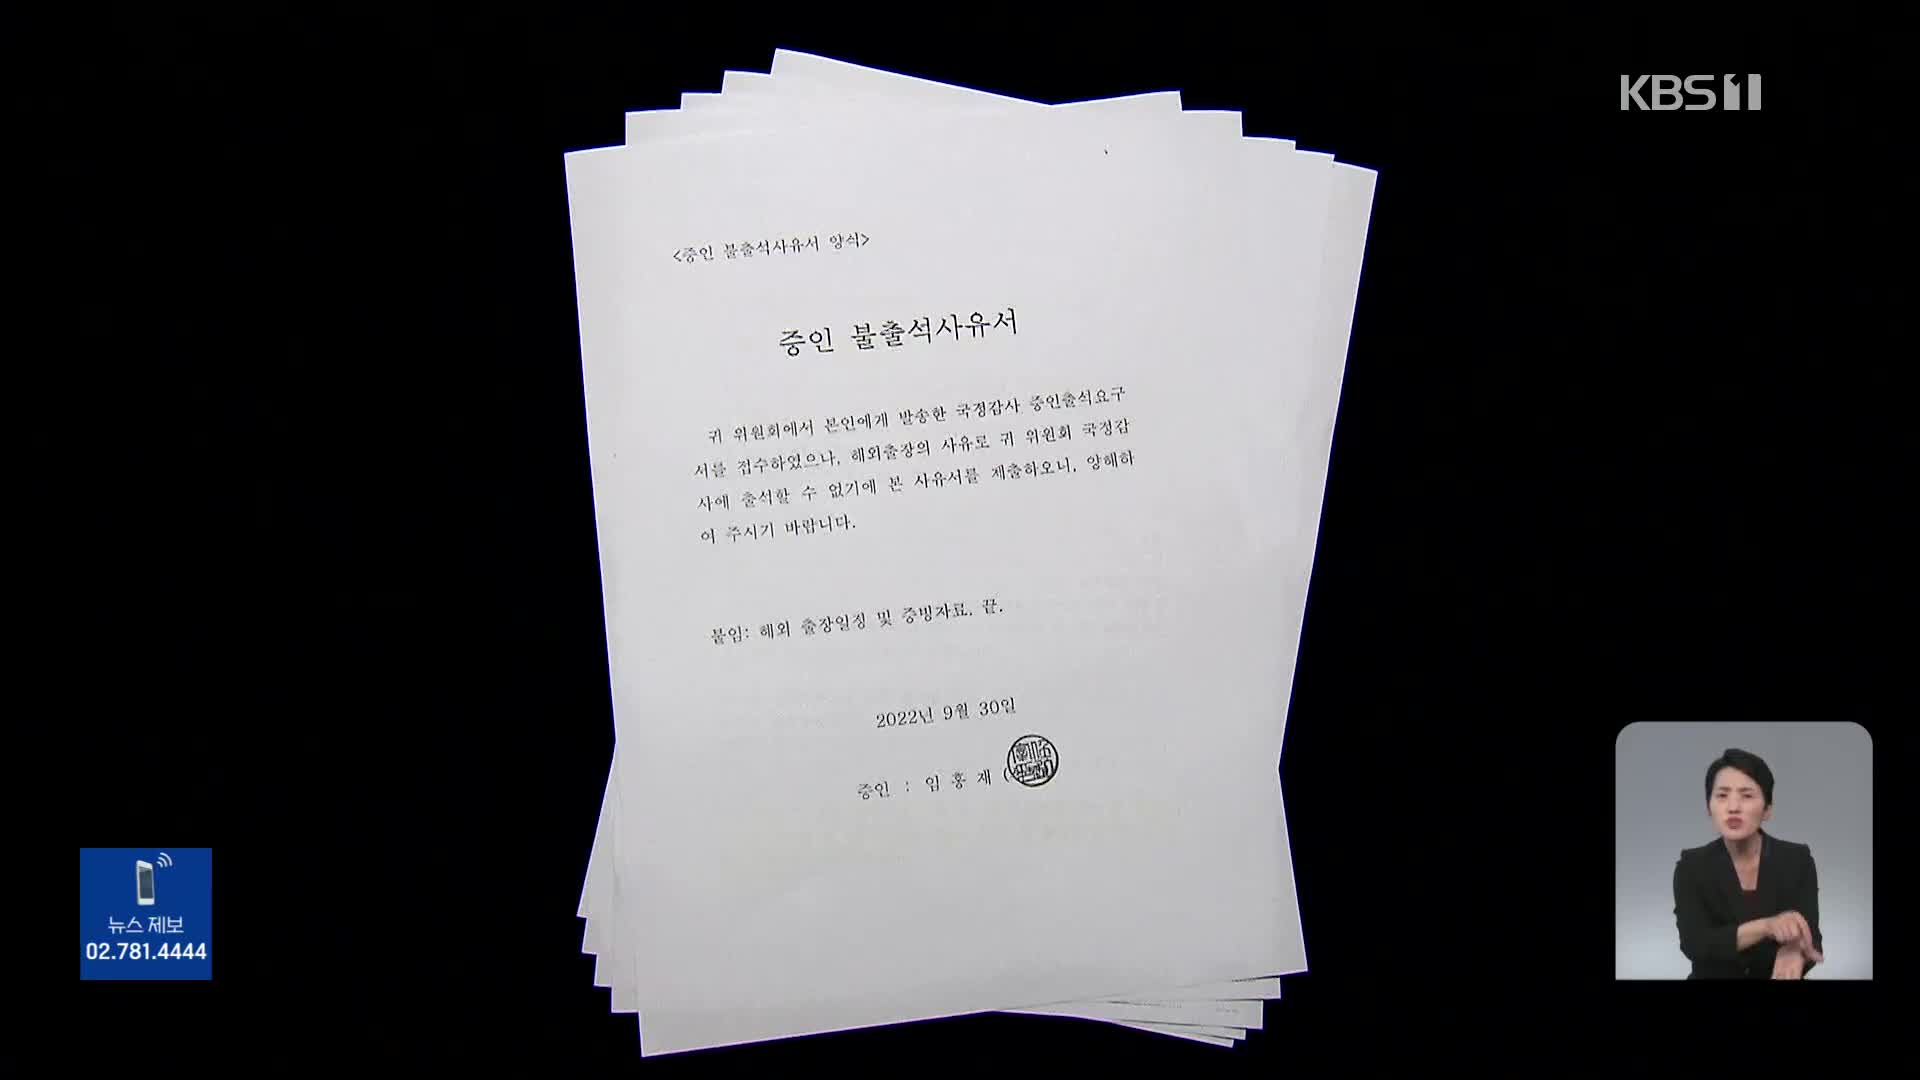 [단독] 이메일 통보로 일정 급조?…김건희 논문 증인 ‘도피성 출장’ 논란